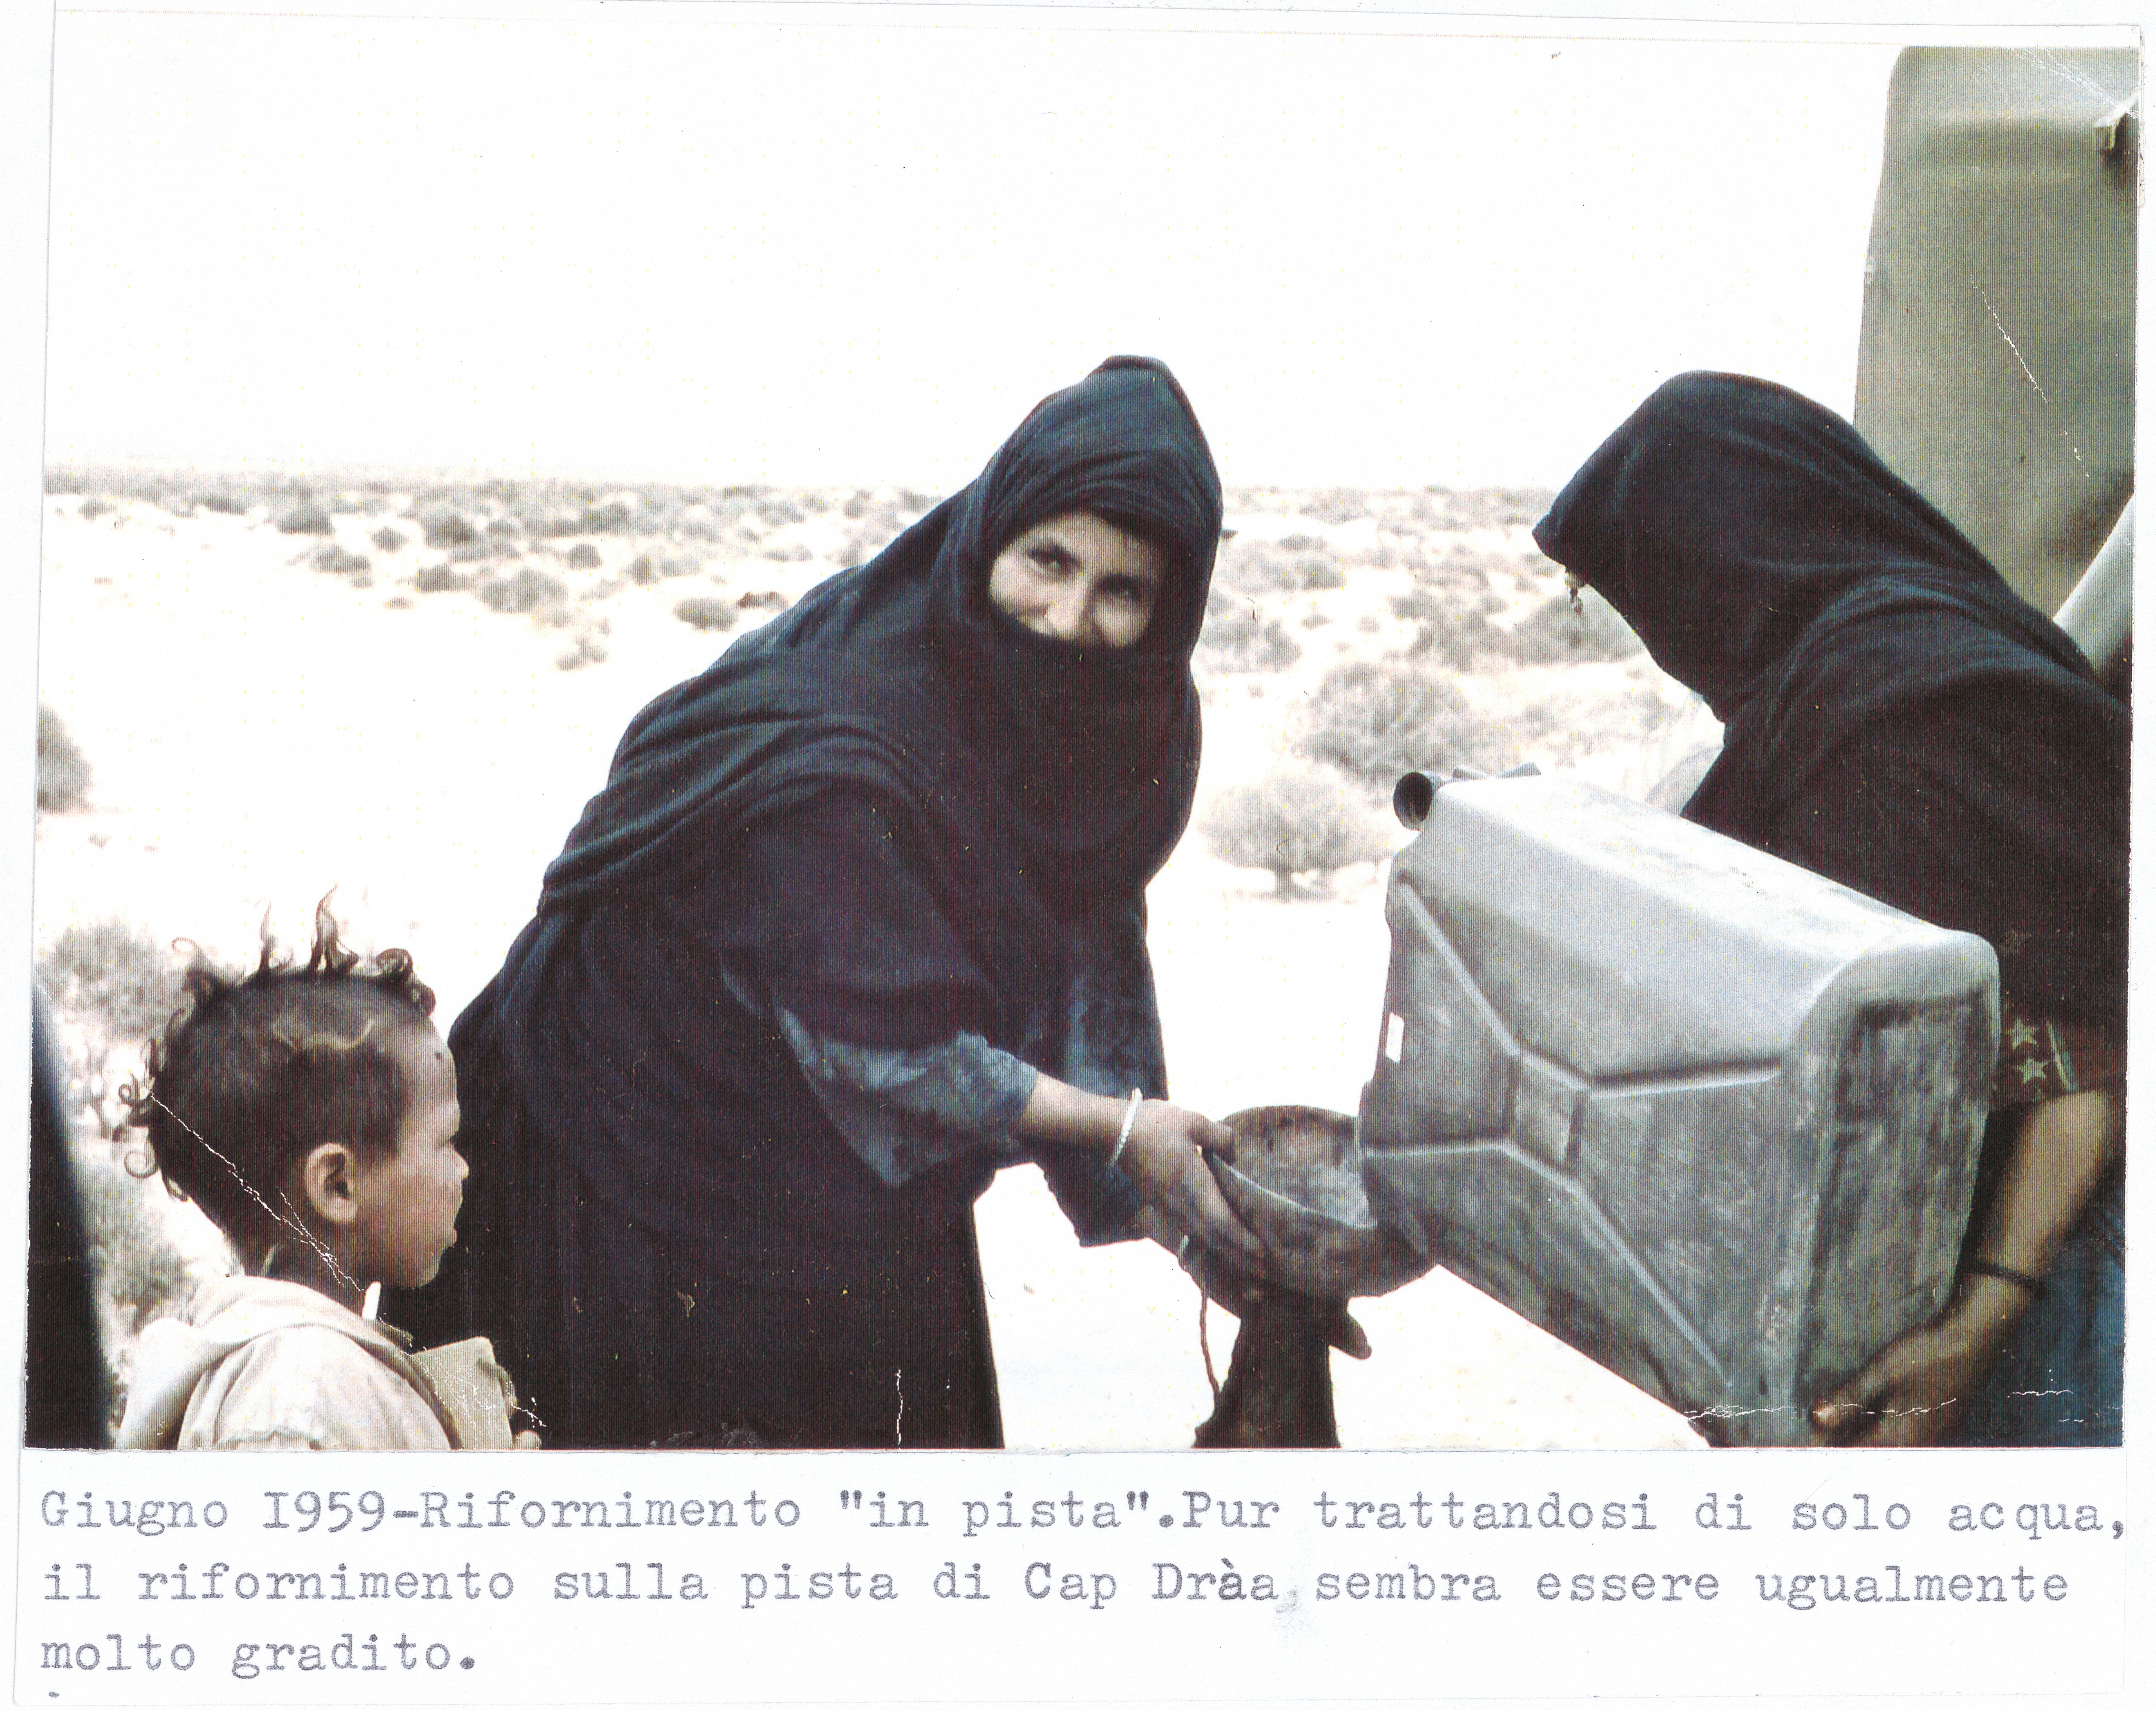 Distribuzione di acqua alla popolazione locale. Marocco, 1959 (Archivio storico Eni)